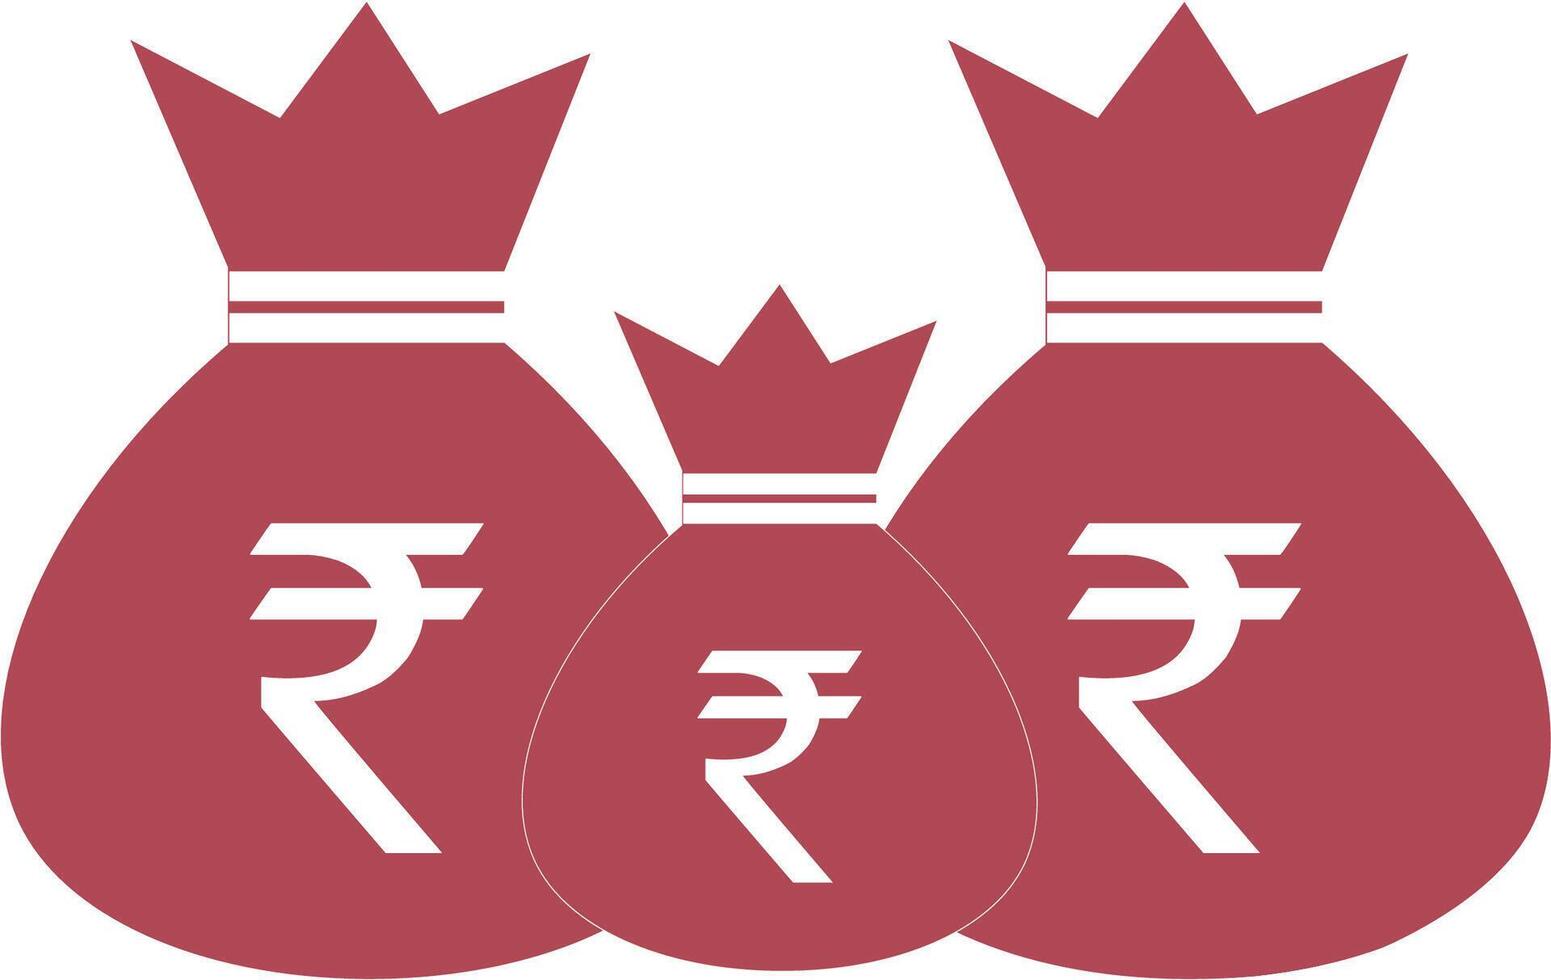 Gold Münzen Stapel mit Rupie Währung unterzeichnen. indisch Kasse finanziell Symbol. modern Vektor Wirtschaft.